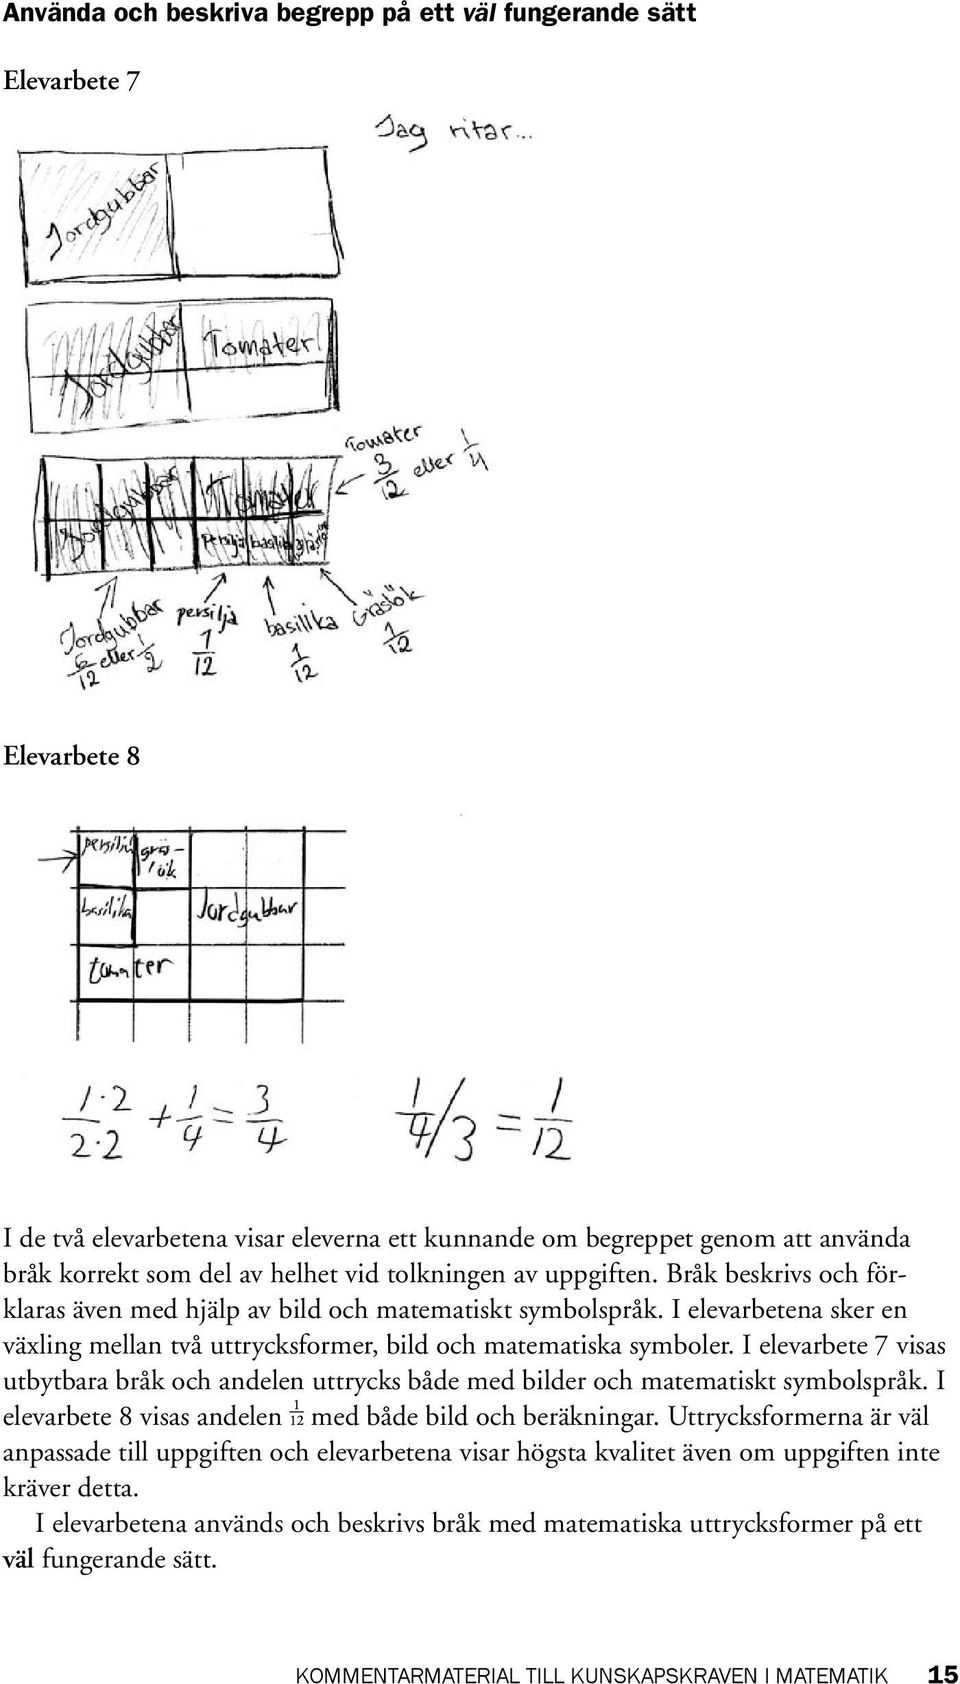 I elevarbete 7 visas utbytbara bråk och andelen uttrycks både med bilder och matematiskt symbolspråk. I elevarbete 8 visas andelen med både bild och beräkningar.